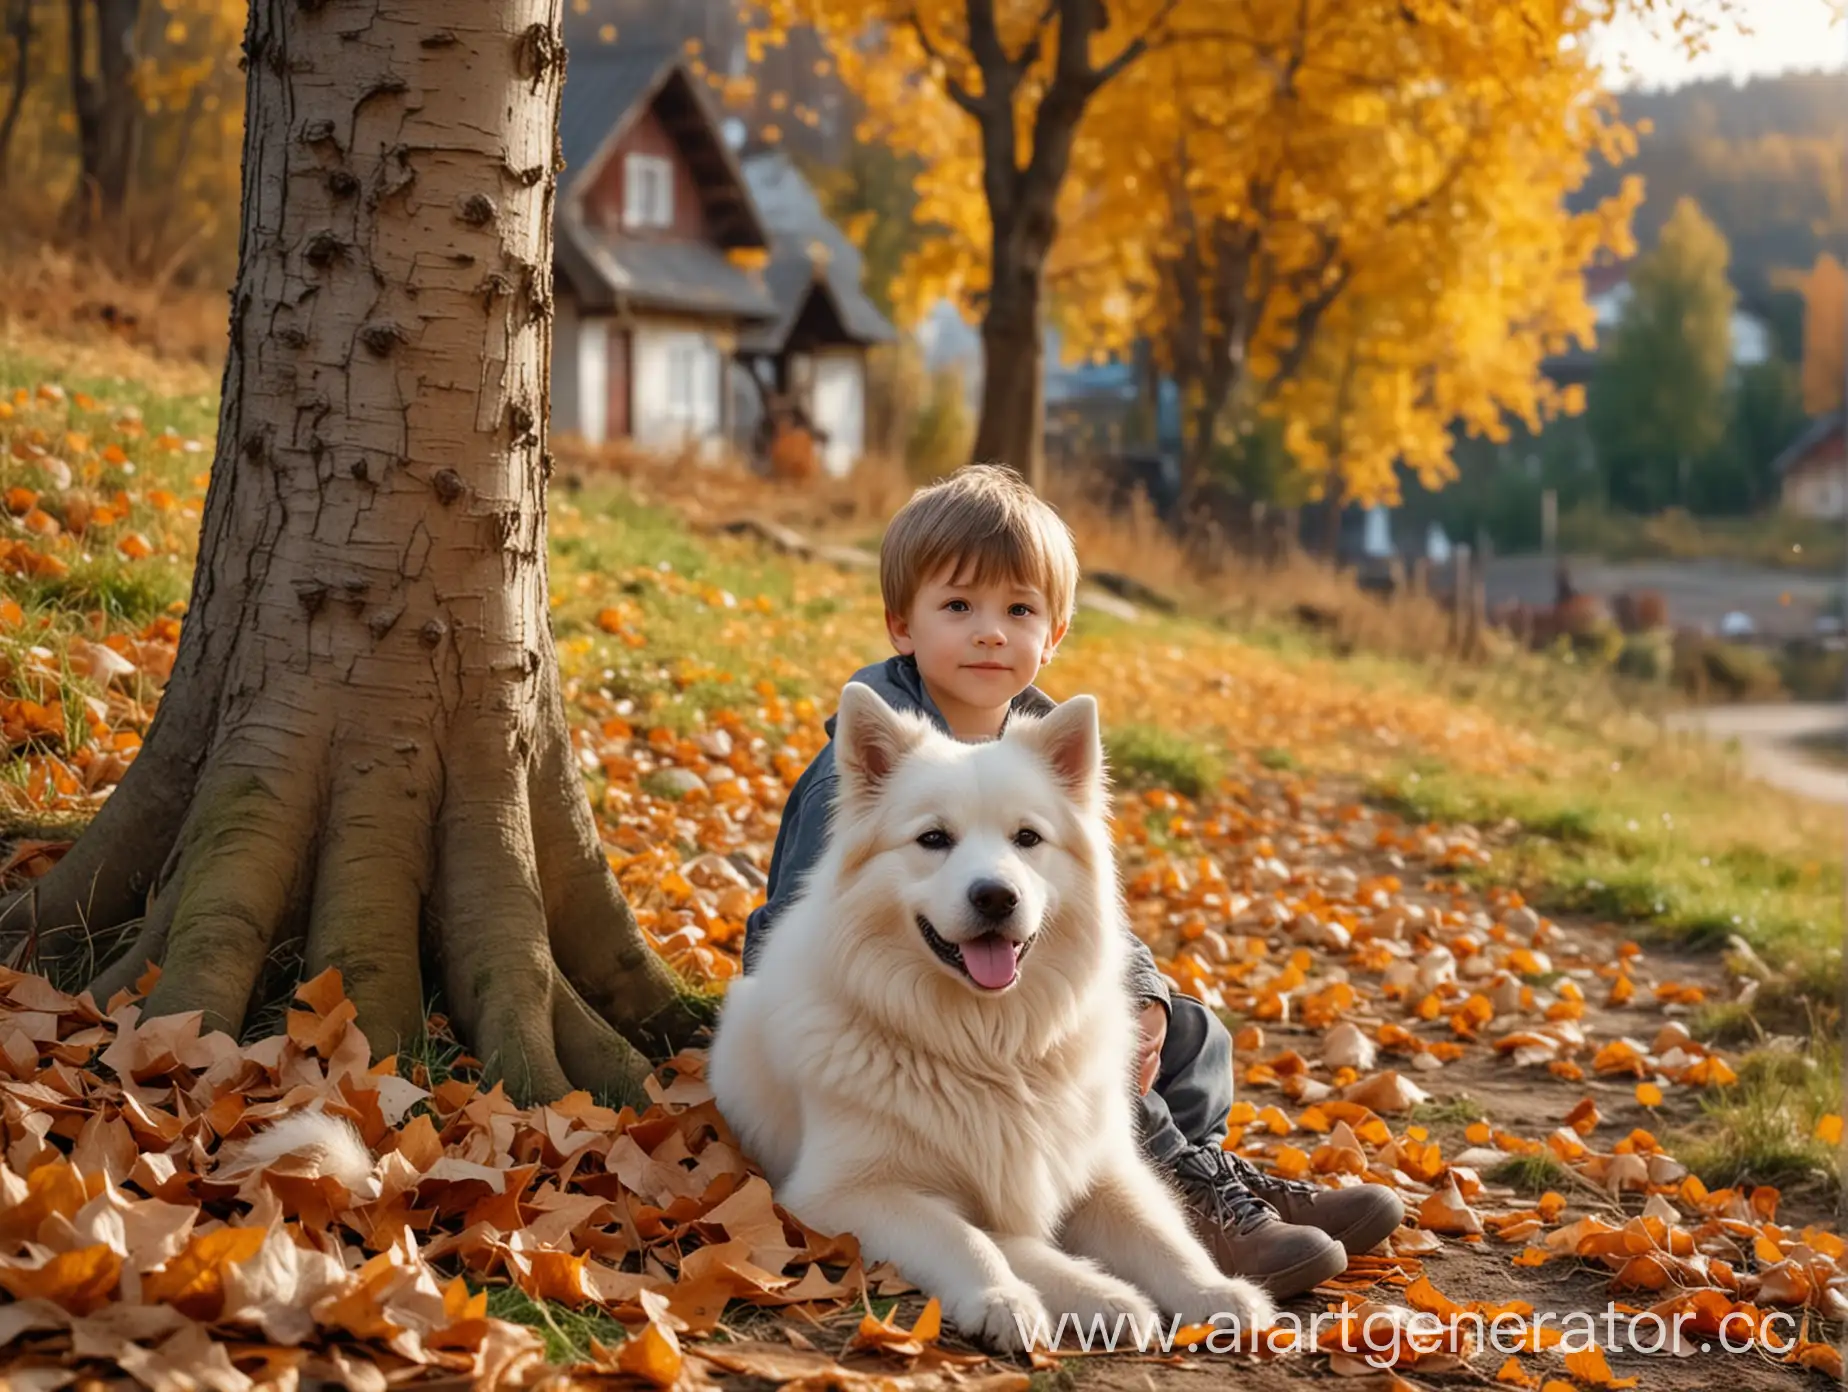 Маленький мальчик сидит около дерева, рядом сидит пушистая собака, на фоне осенний лес и деревня, под ногами опавшие листья и трава, фон размыт, реалистично